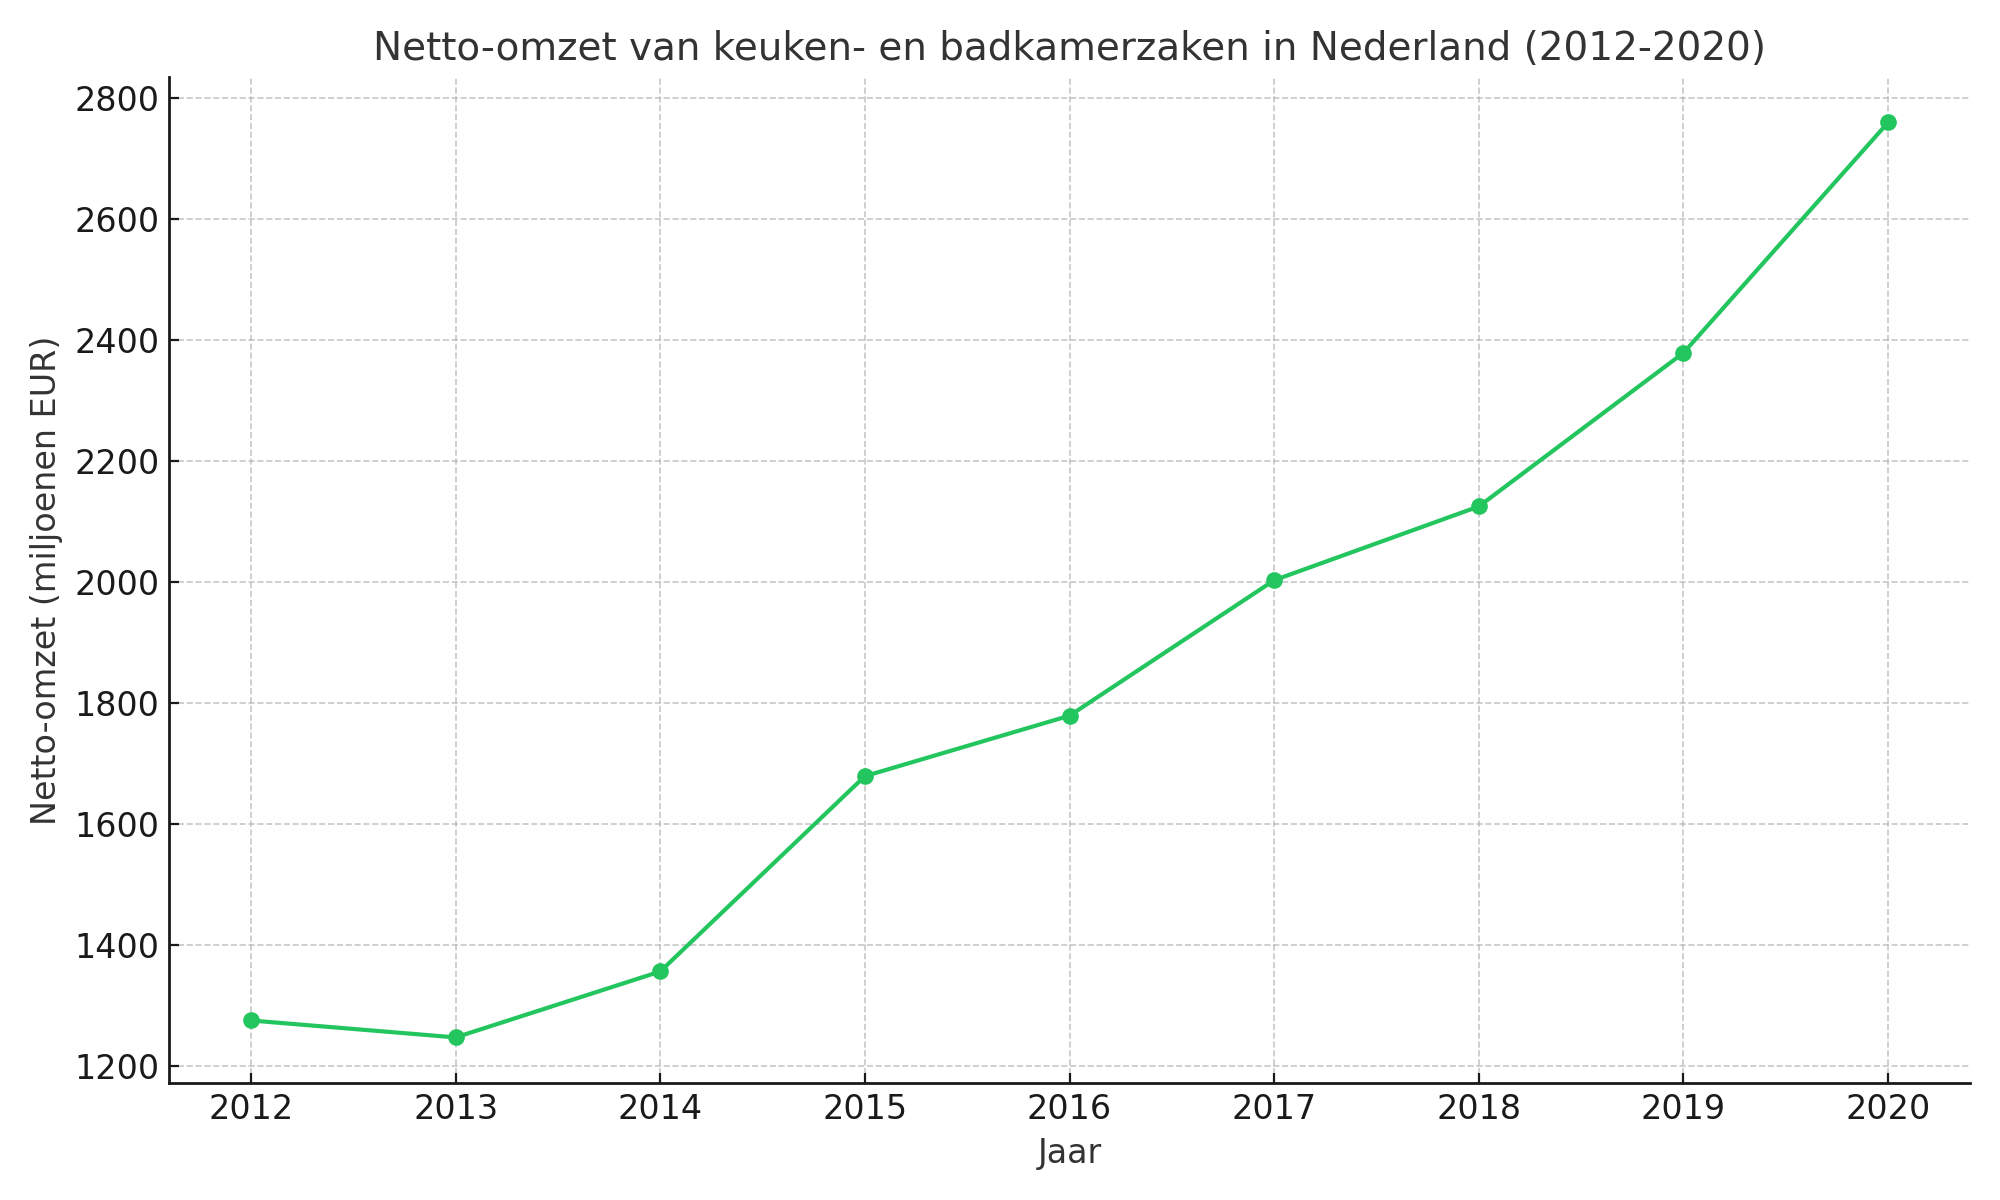 Netto omzet keuken en badkamerzaken in Nederland